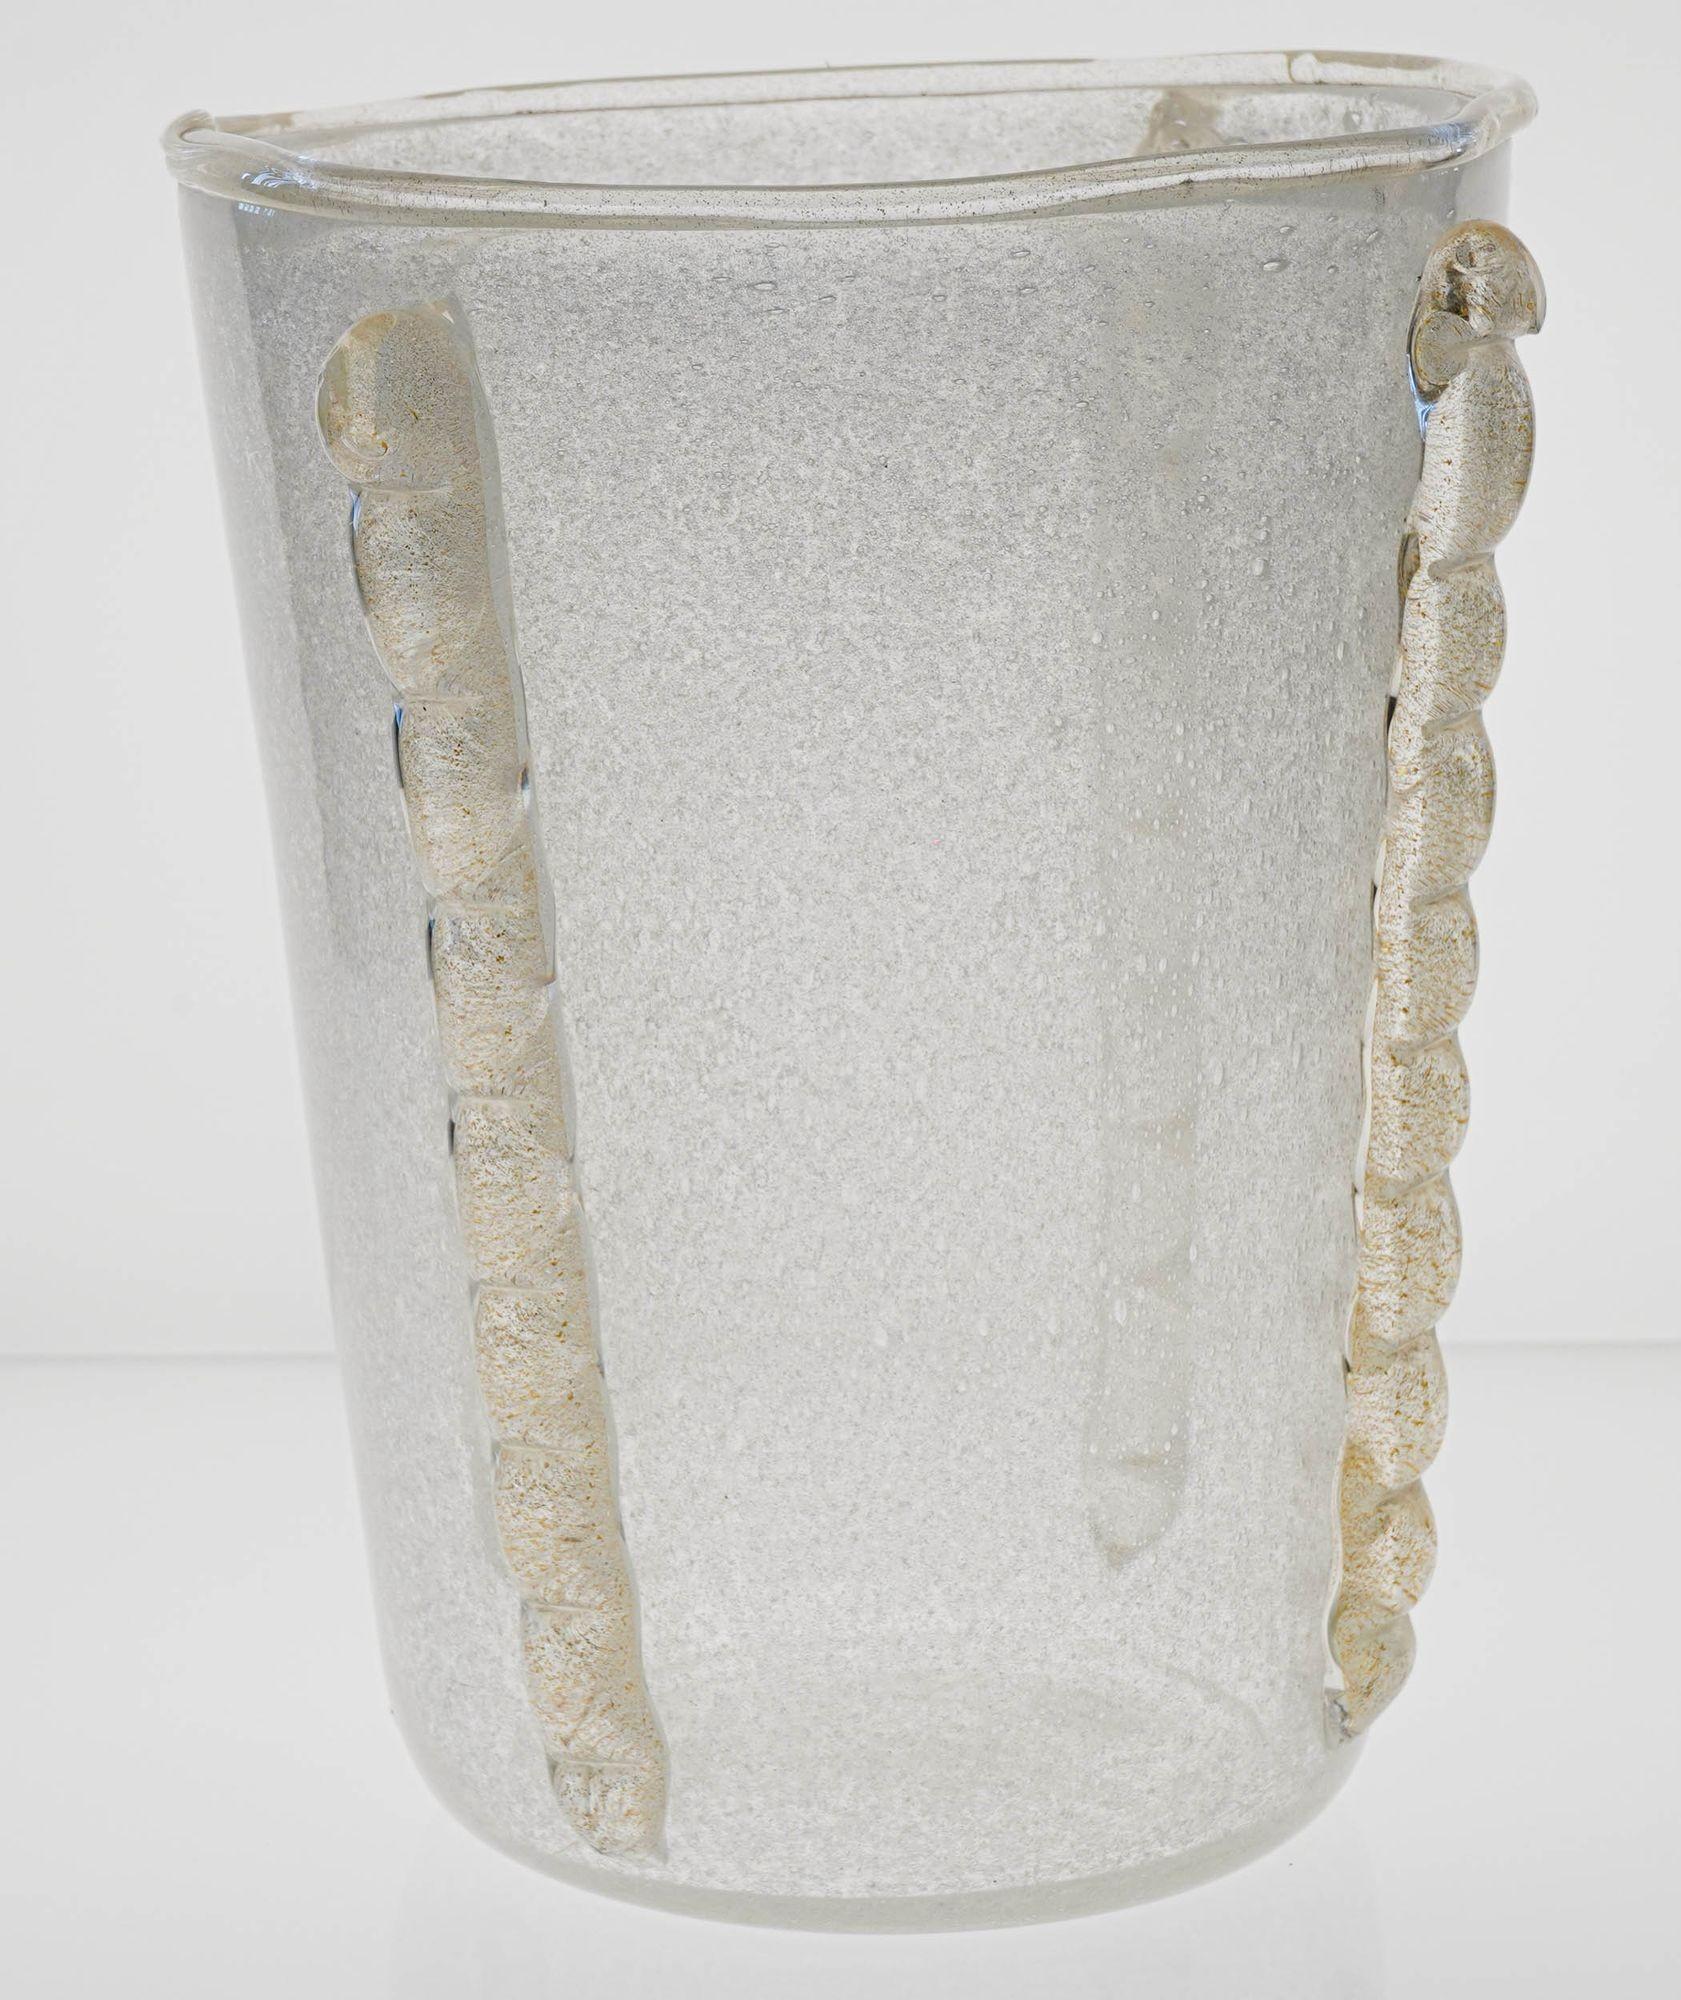 Sehr große Vase aus Puligoso-Glas mit vier vertikalen Anwendungen Morise mit 24K Blattgold eingebettet.
Das Puligoso-Finish ist sehr gut ausgeführt, mit kleinen Bläschen überall auf dem Glaskörper.
Ich glaube, sie wurde als Luxus-Eiskübel